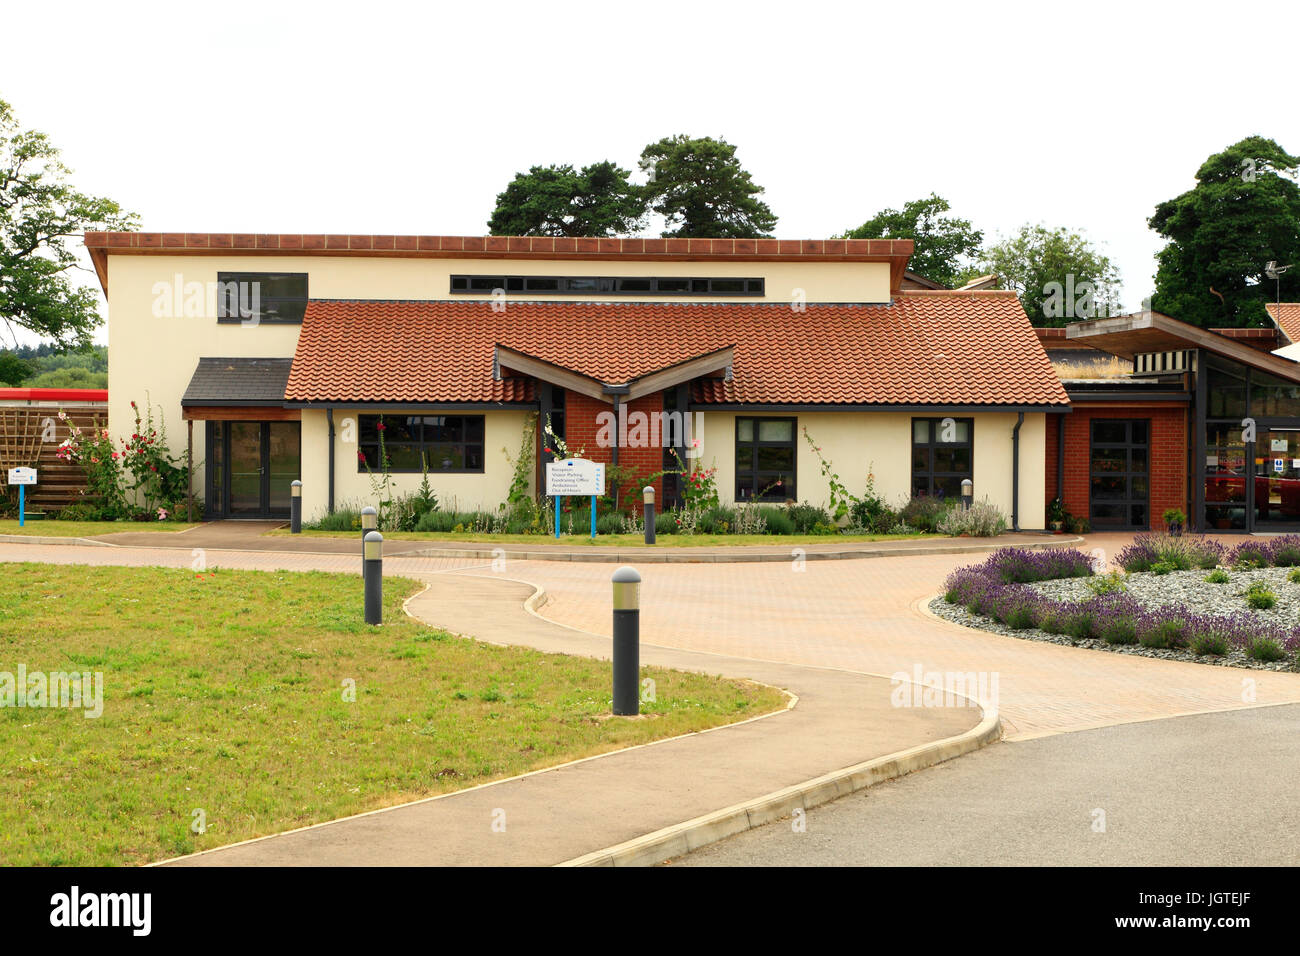 Tippen Sie auf House, The Norfolk Hospiz, Hillington, Norfolk, England, UK, Englisch Hospize Stockfoto